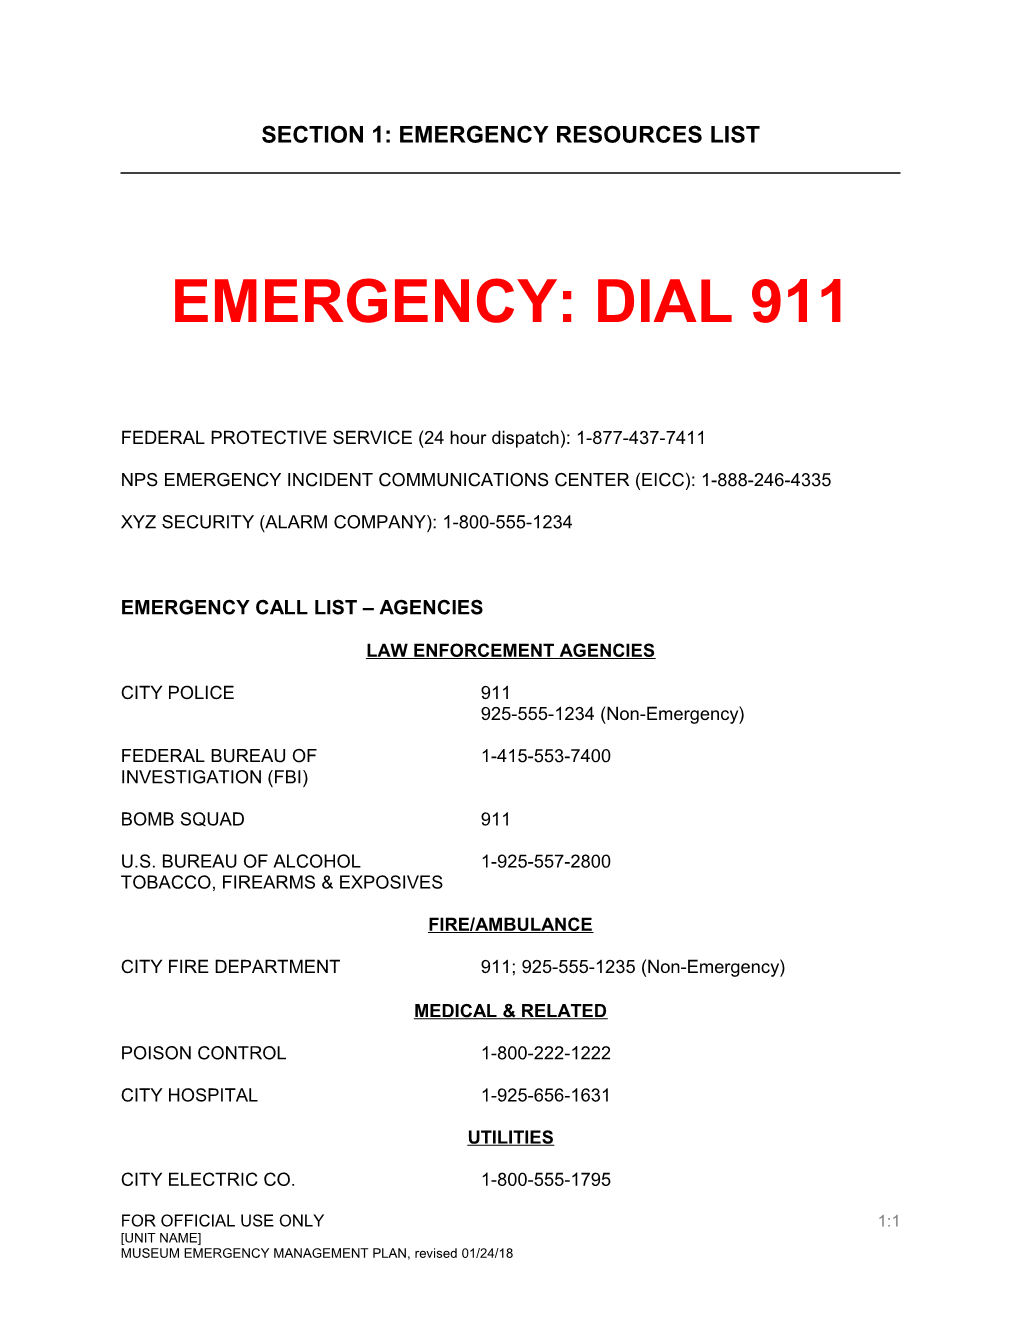 Park/Regional Telephone Numbers for Emergencies